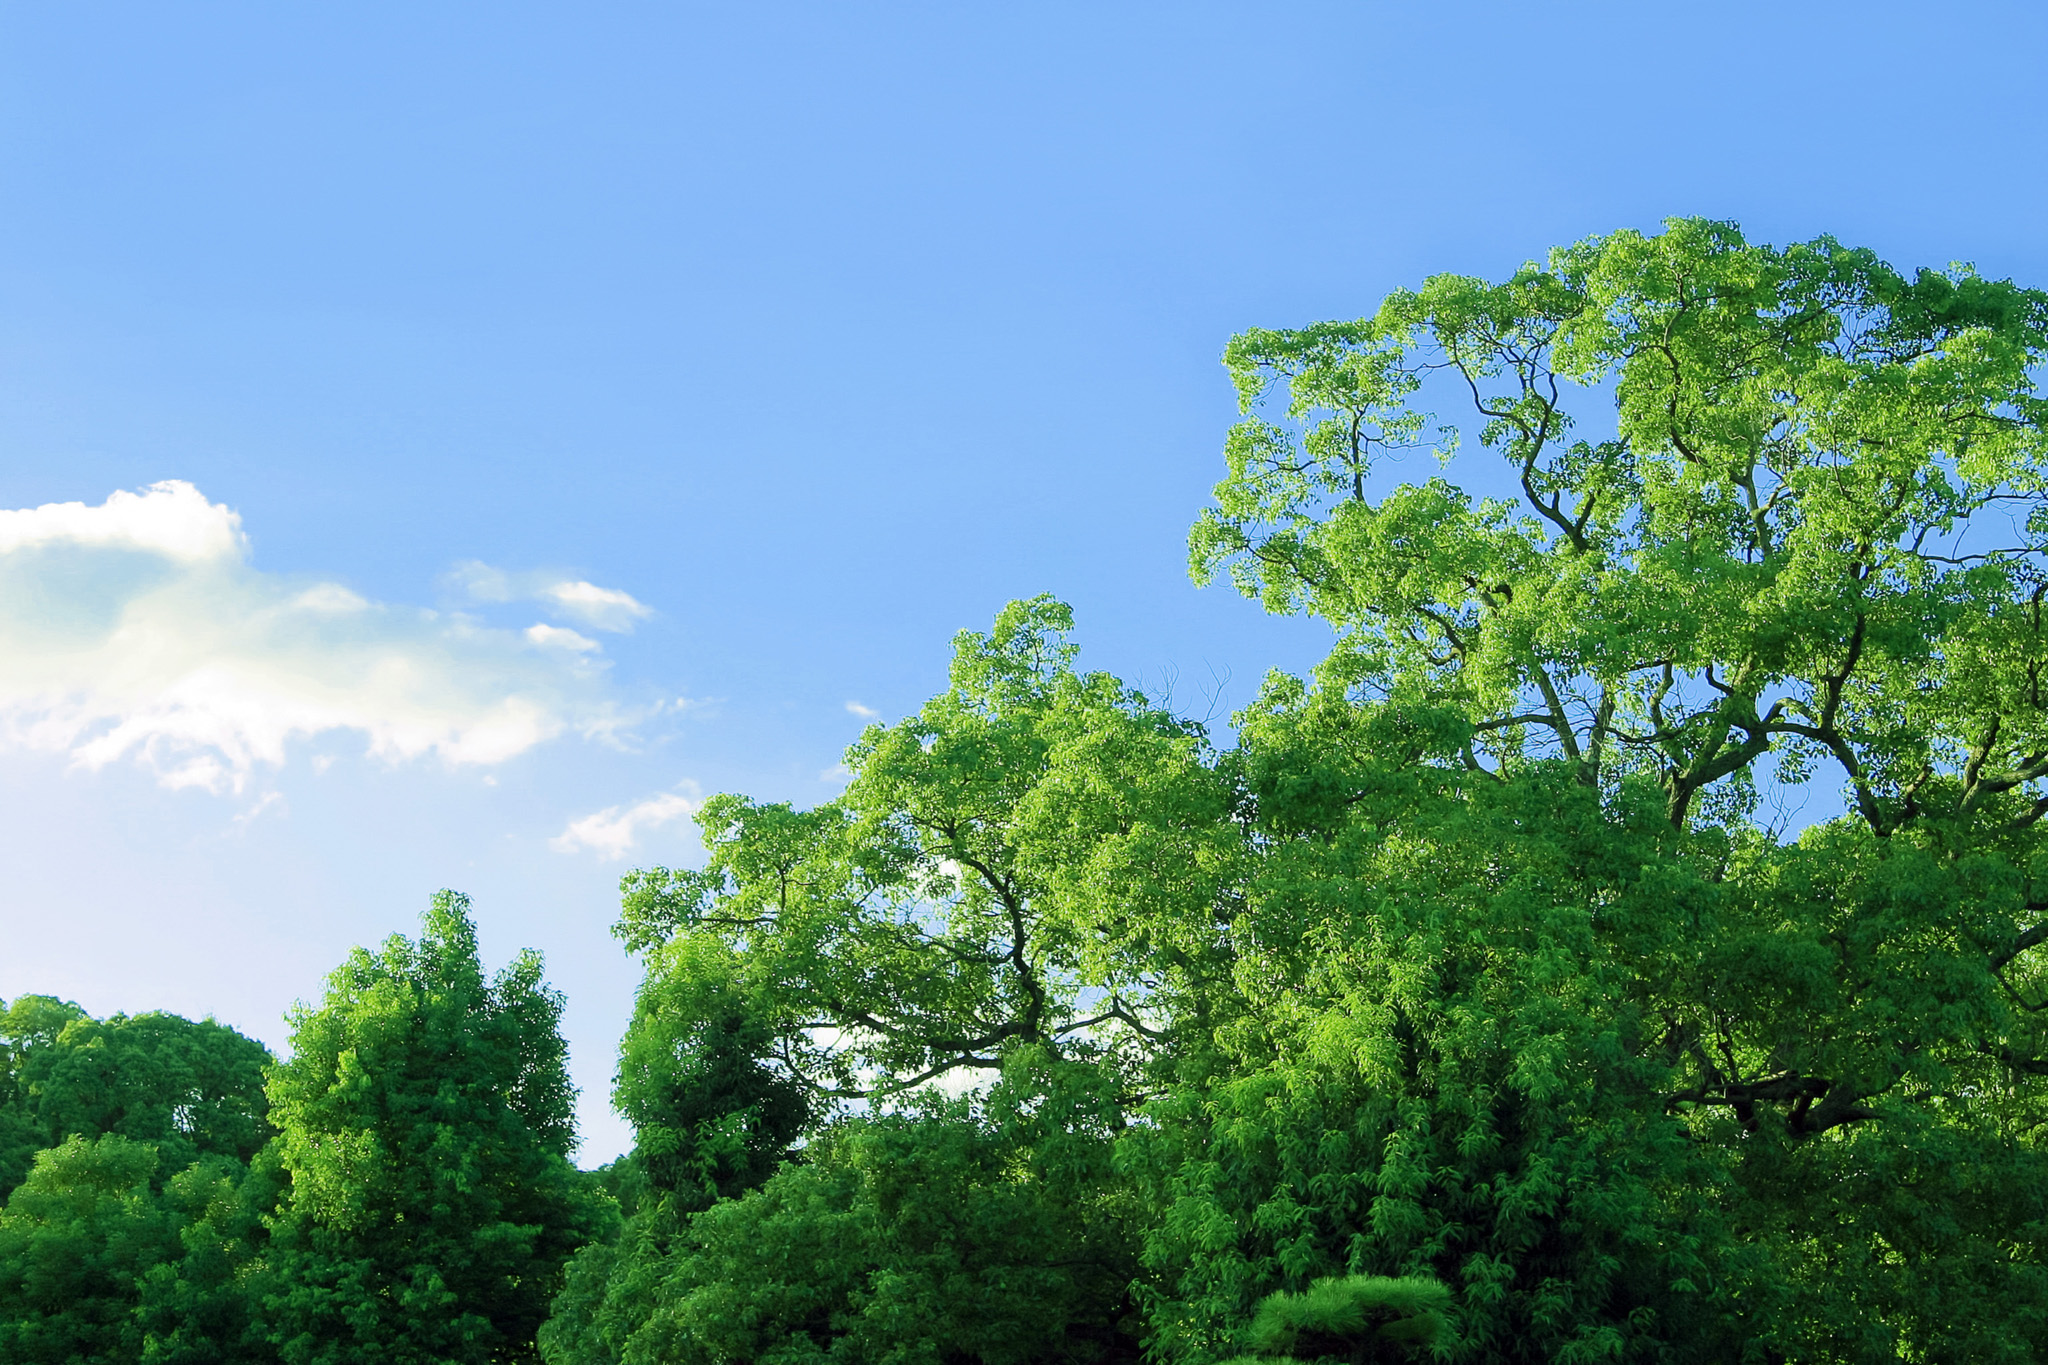 「朝の光を受ける緑の木立」写真と画像が全て無料のフリー素材 00021 - BEIZ images